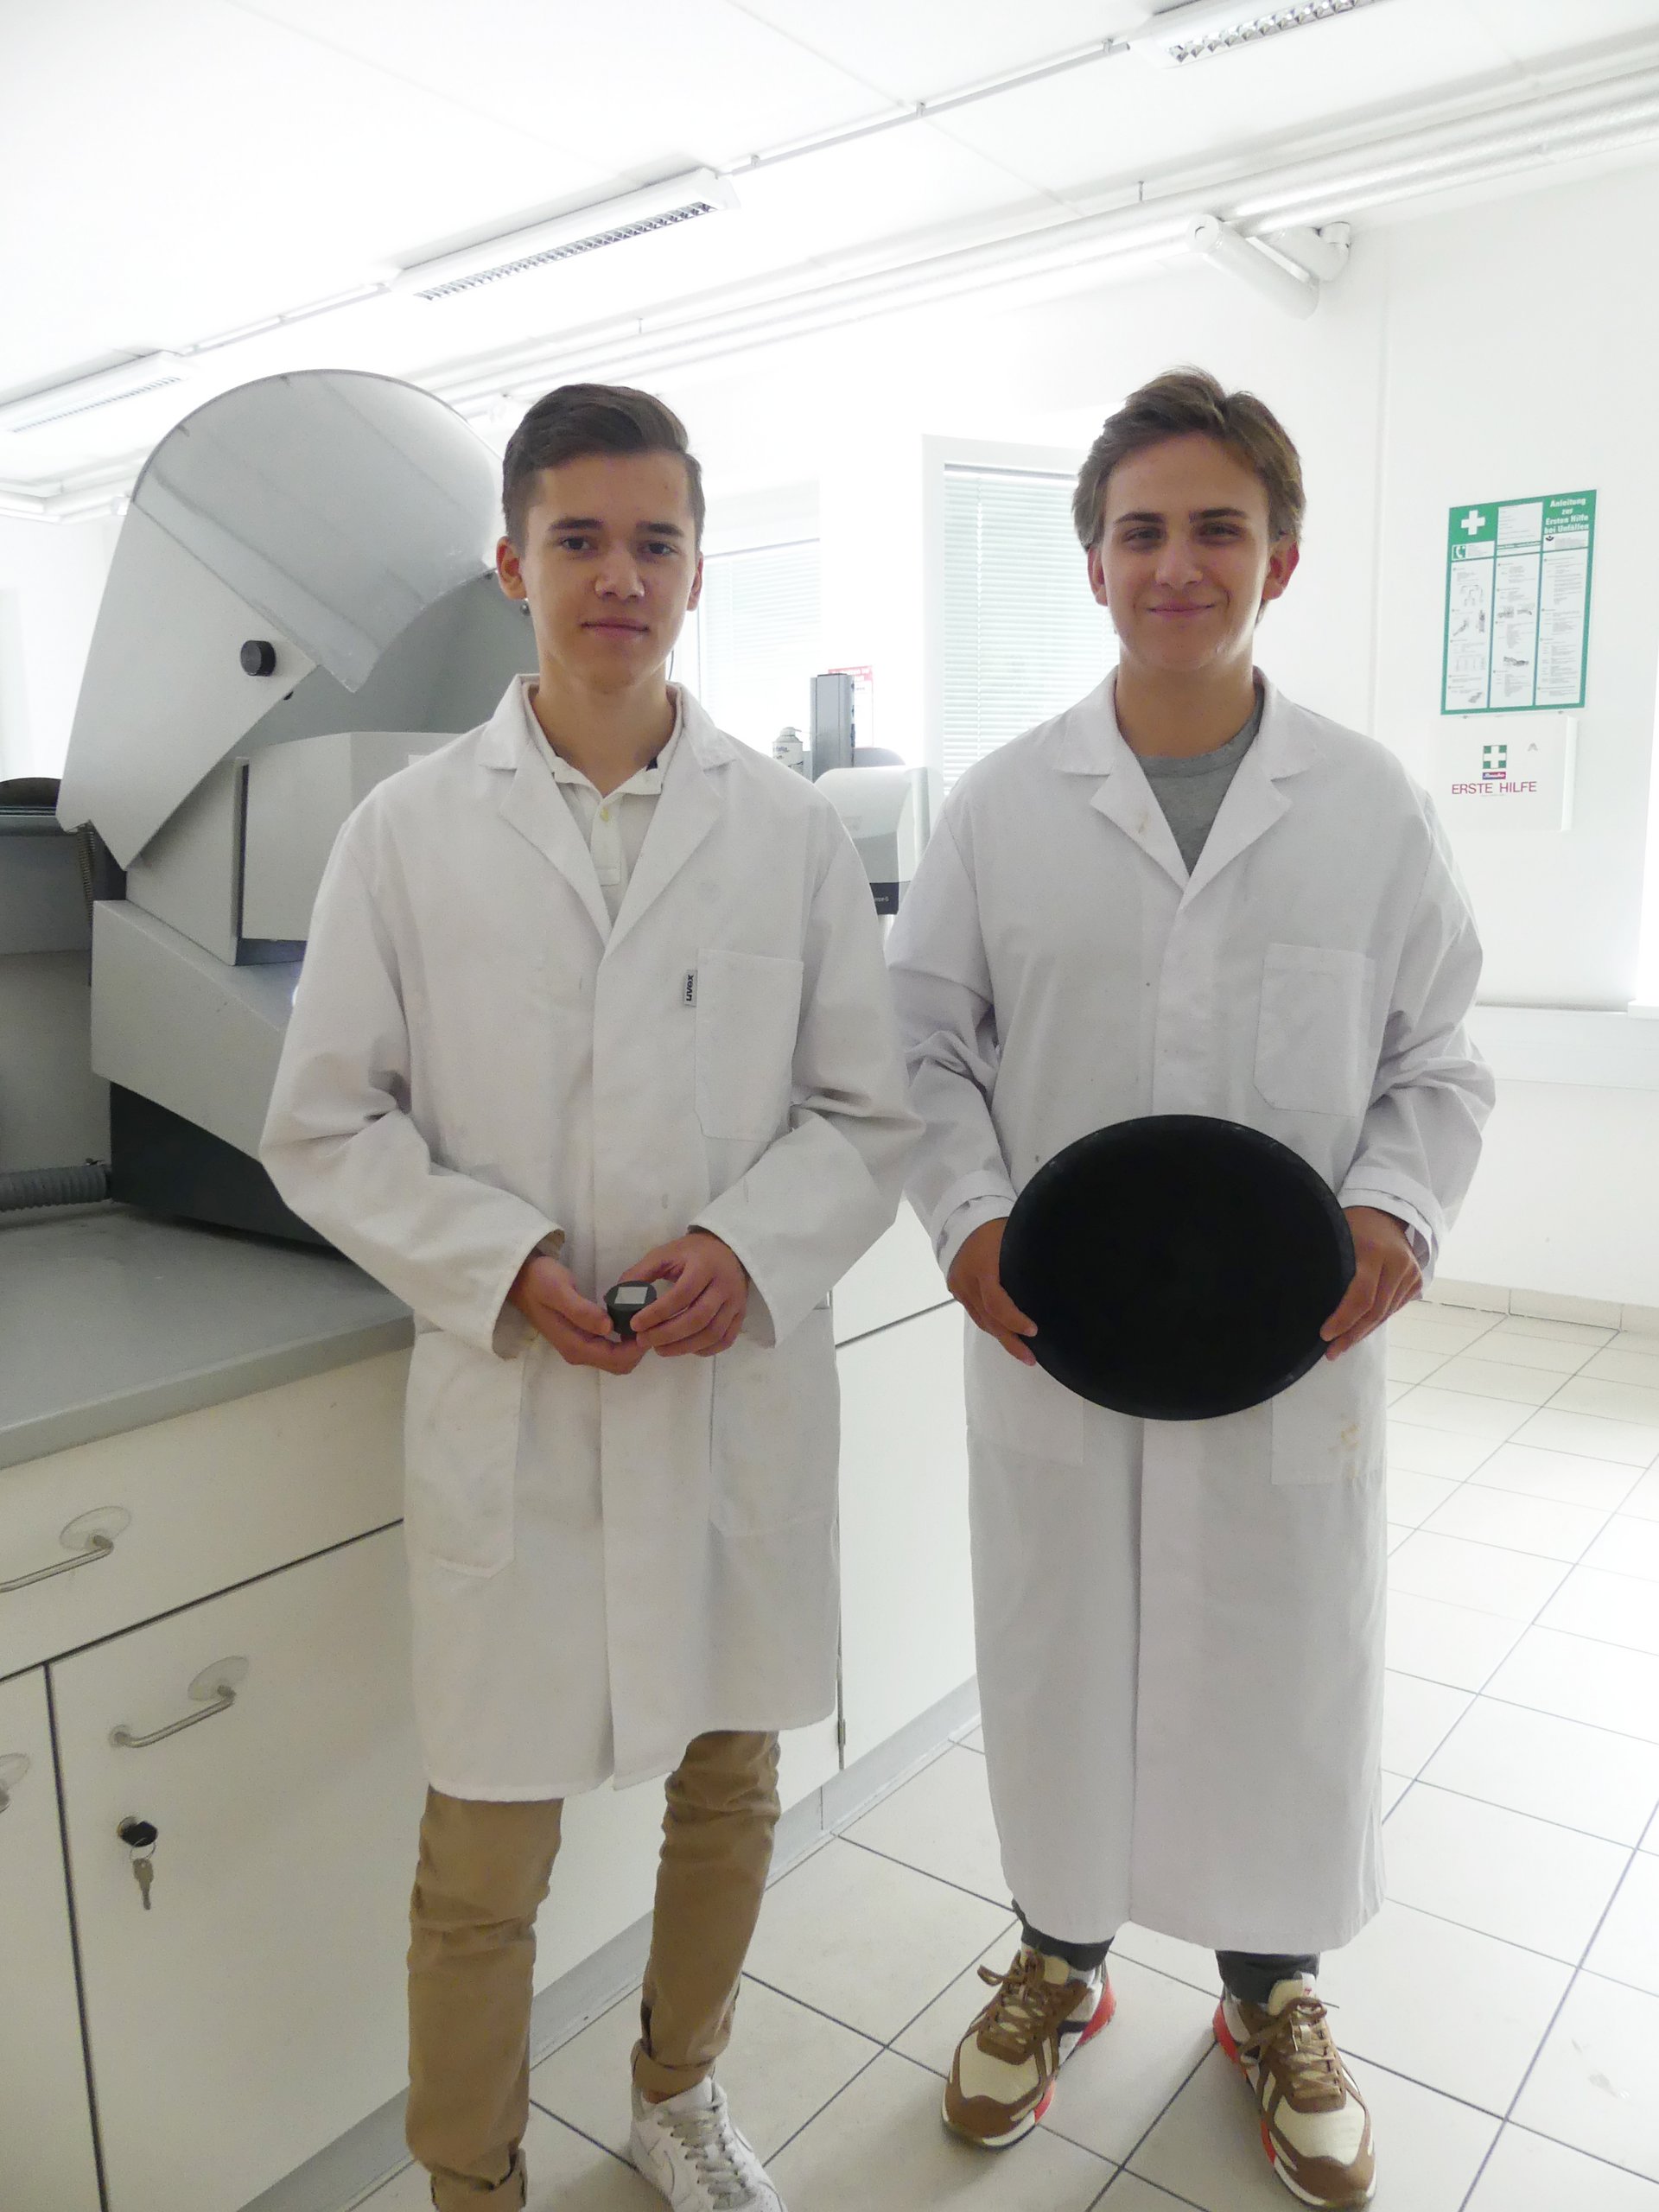 Matteo Malle und Thomas Panger (v.l.) schlossen den experimentellen Teil ihrer Arbeit 